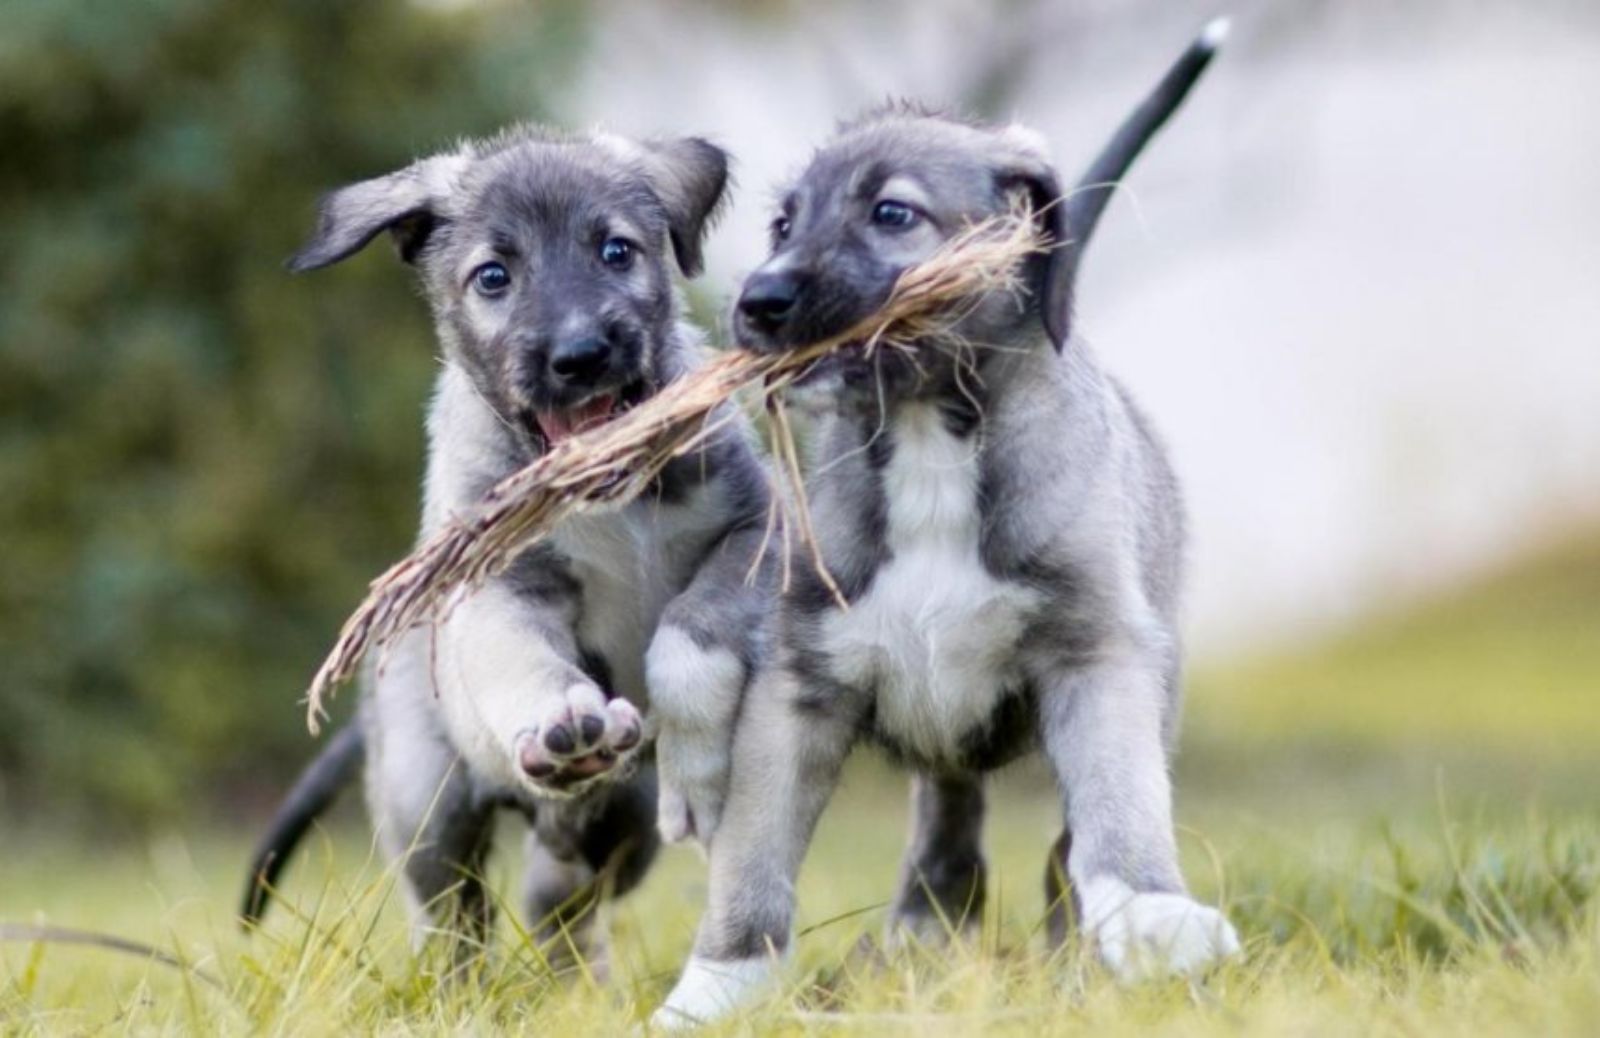 Nati i primi gemelli identici di cuccioli di cane 